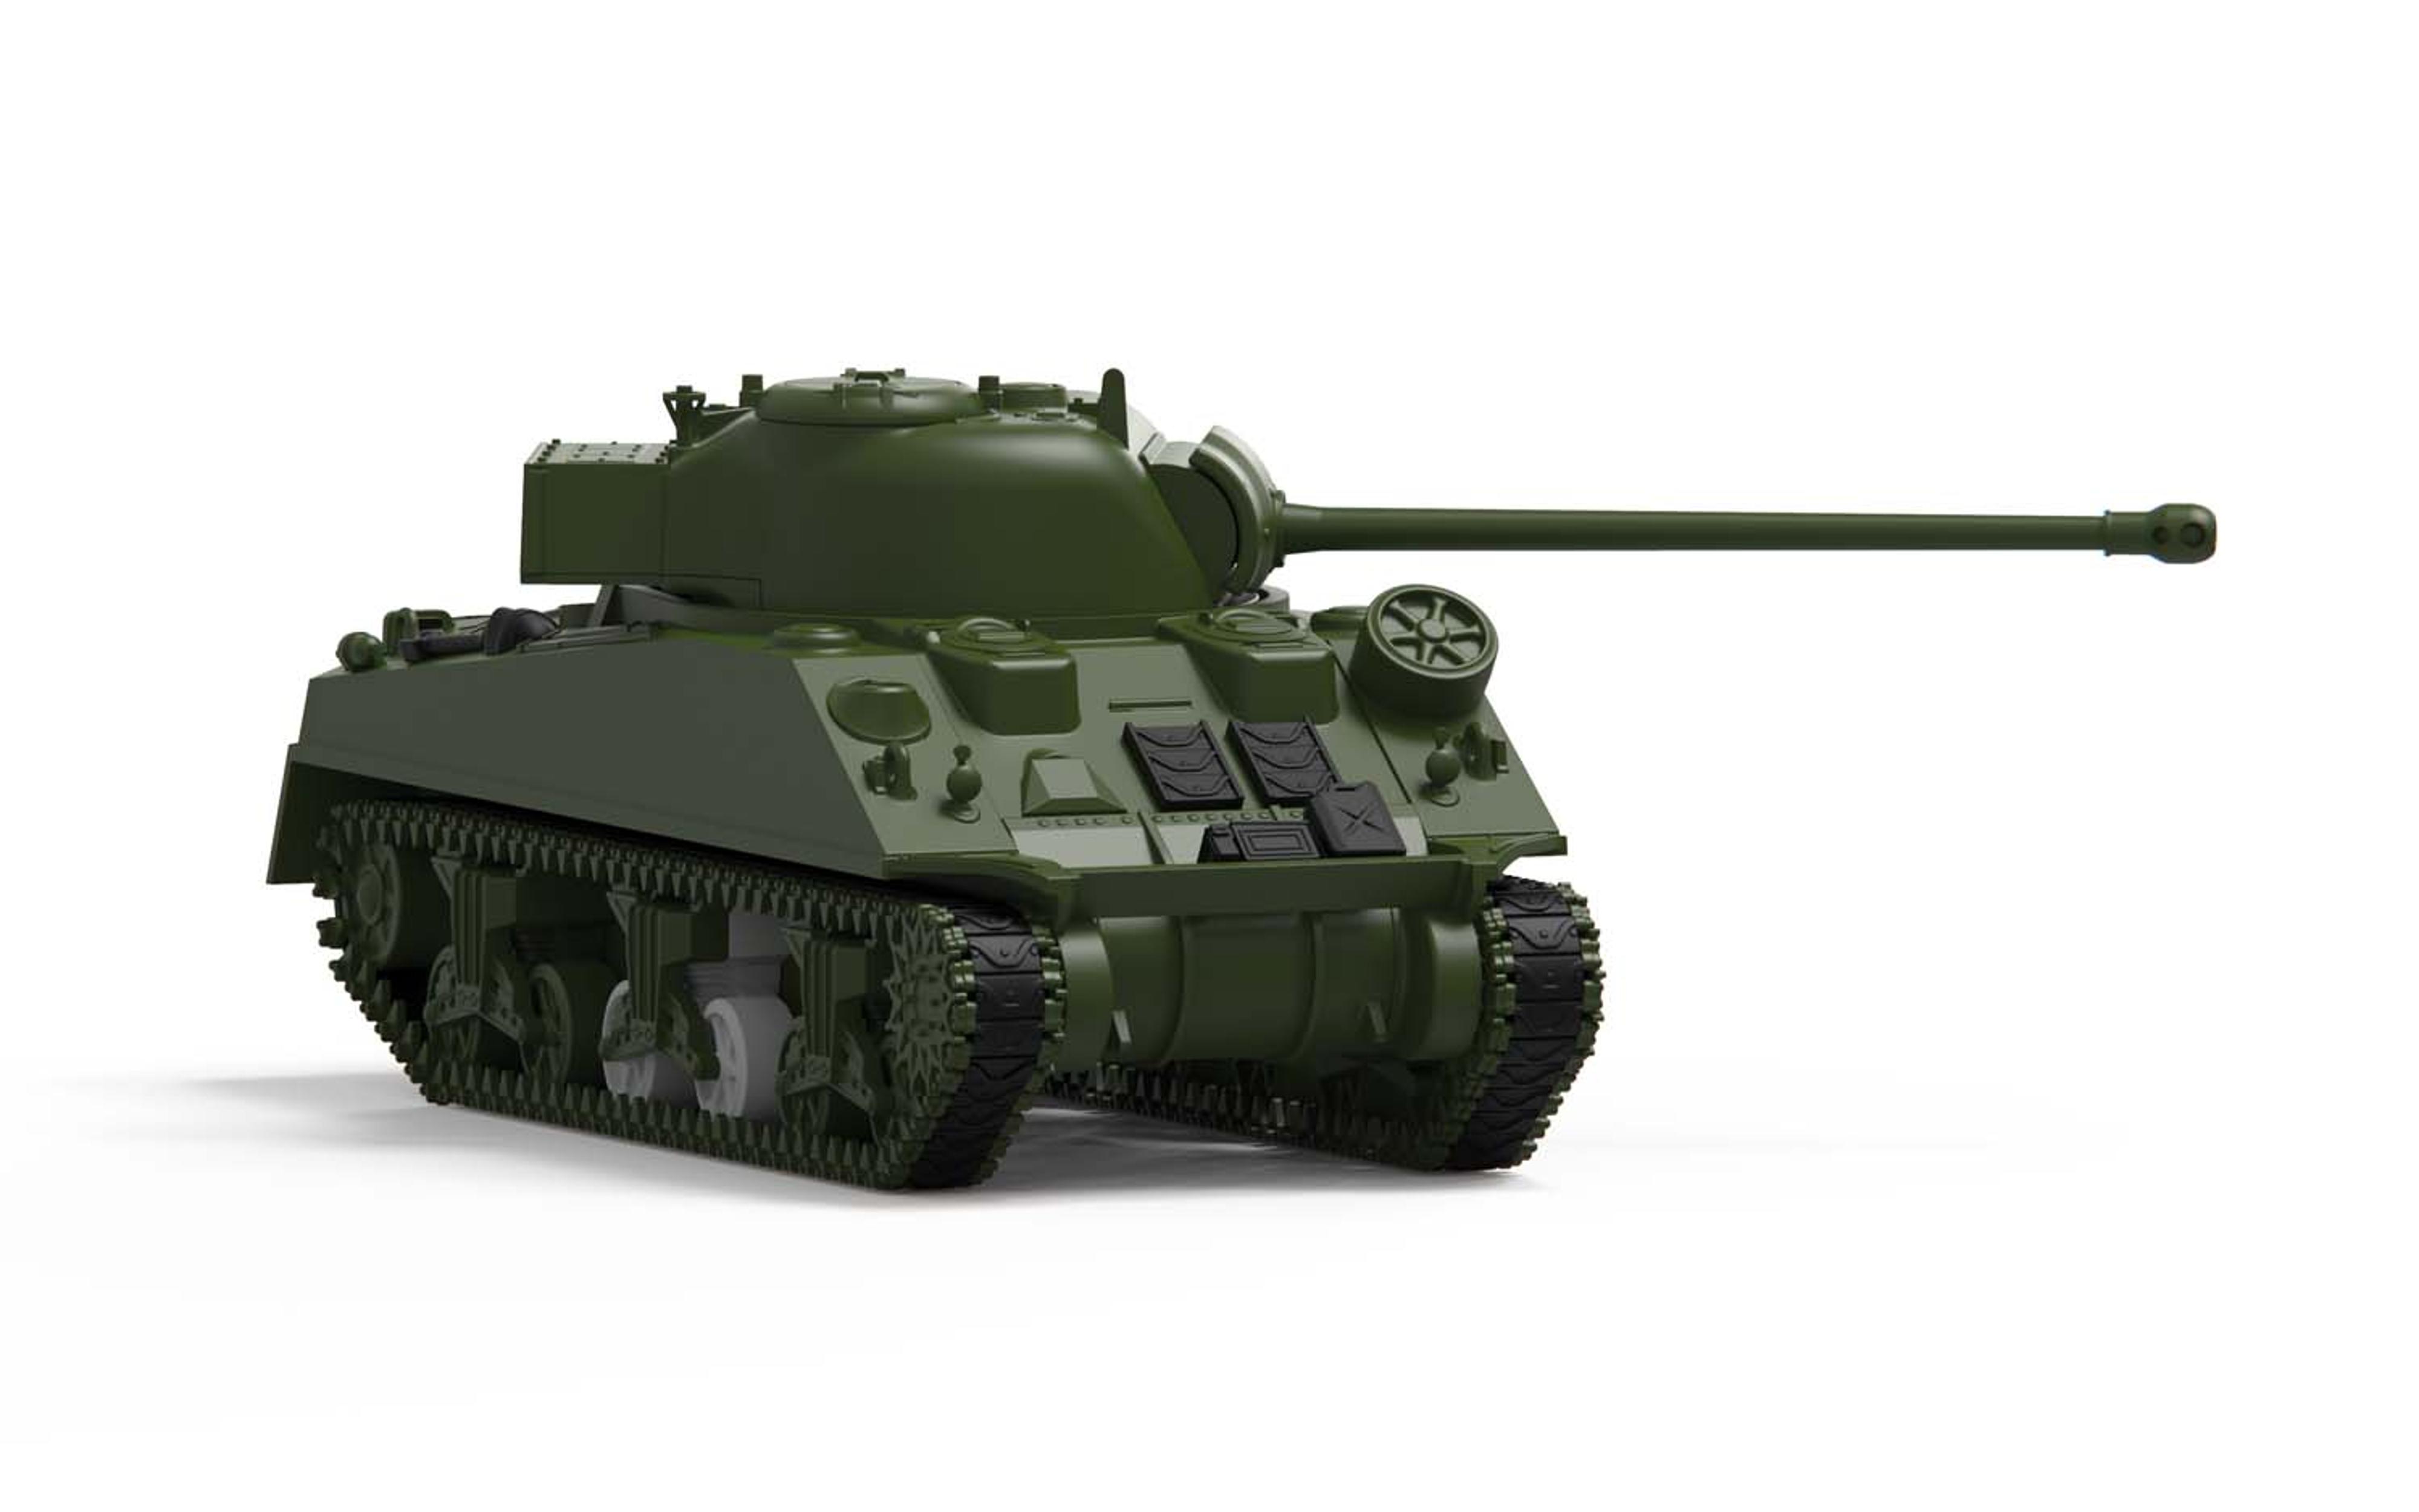 1/72 Sherman Firefly Vc Model Kit